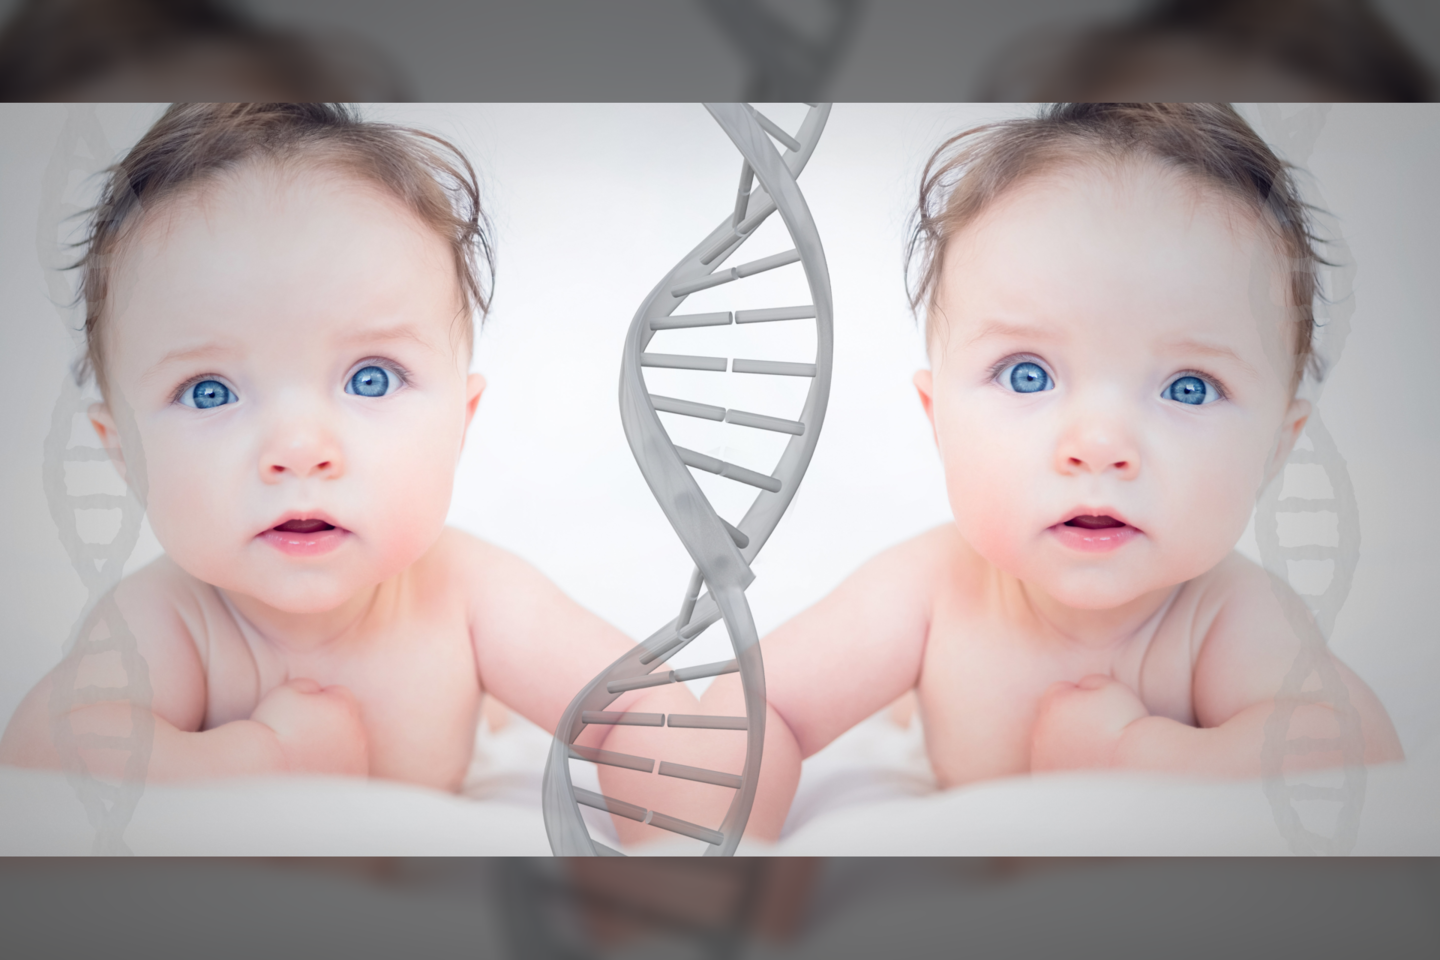  Spalį Jungtinės Karalystės vyriausybė paskelbė, kad vyriausybei priklausanti bendrovė „Genomics England“ gaus finansavimą Jungtinėje Karalystėje vykdomiems bandomiesiems tyrimams, kurių tikslas – nustatyti 100 000-200 000 kūdikių genomų seką.<br> 123rf iliustr.